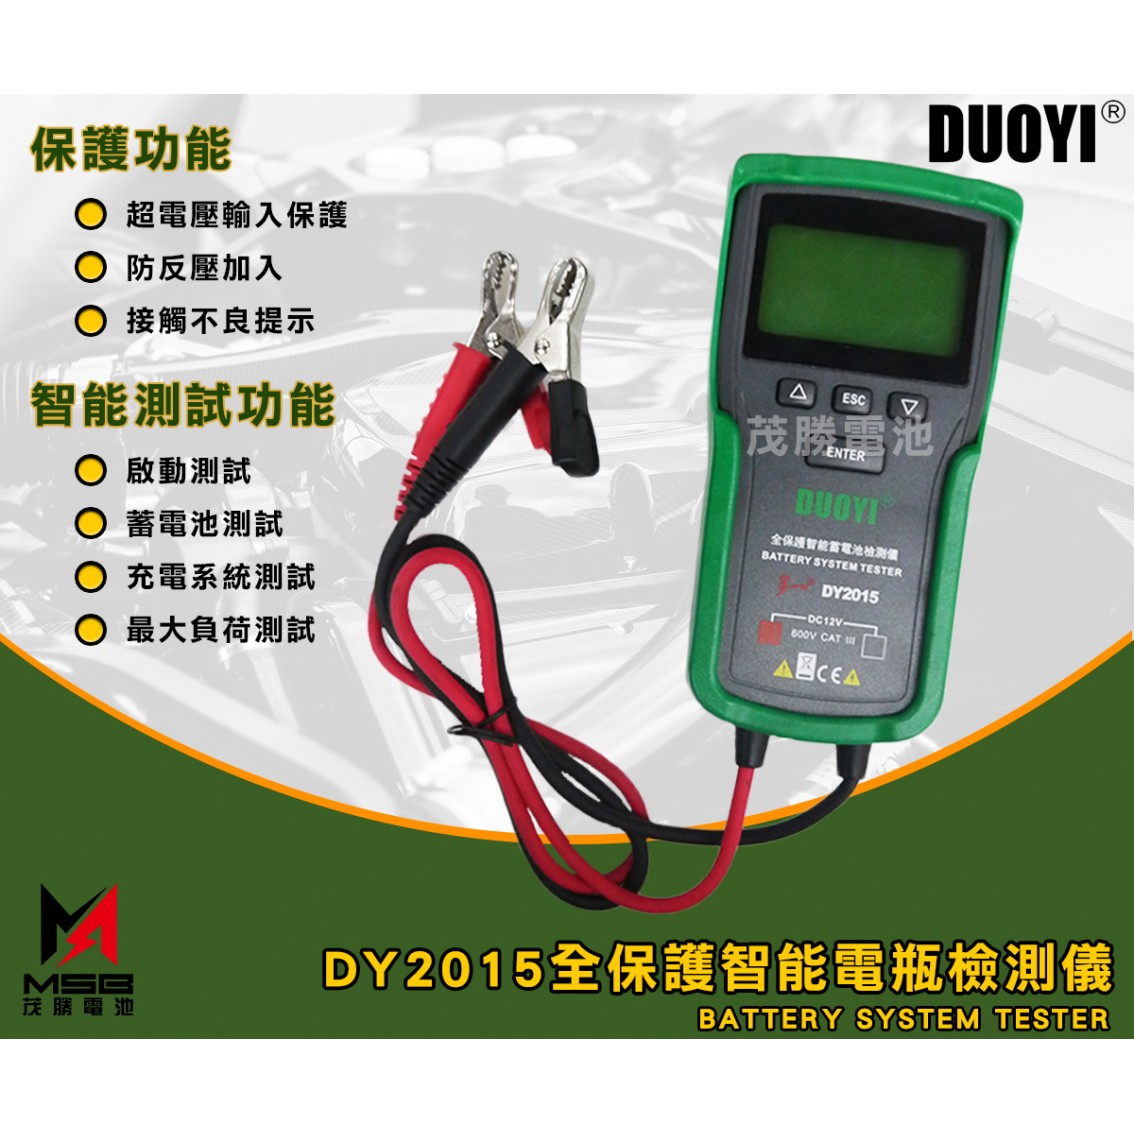 DY2015 全保護智能電池檢測儀